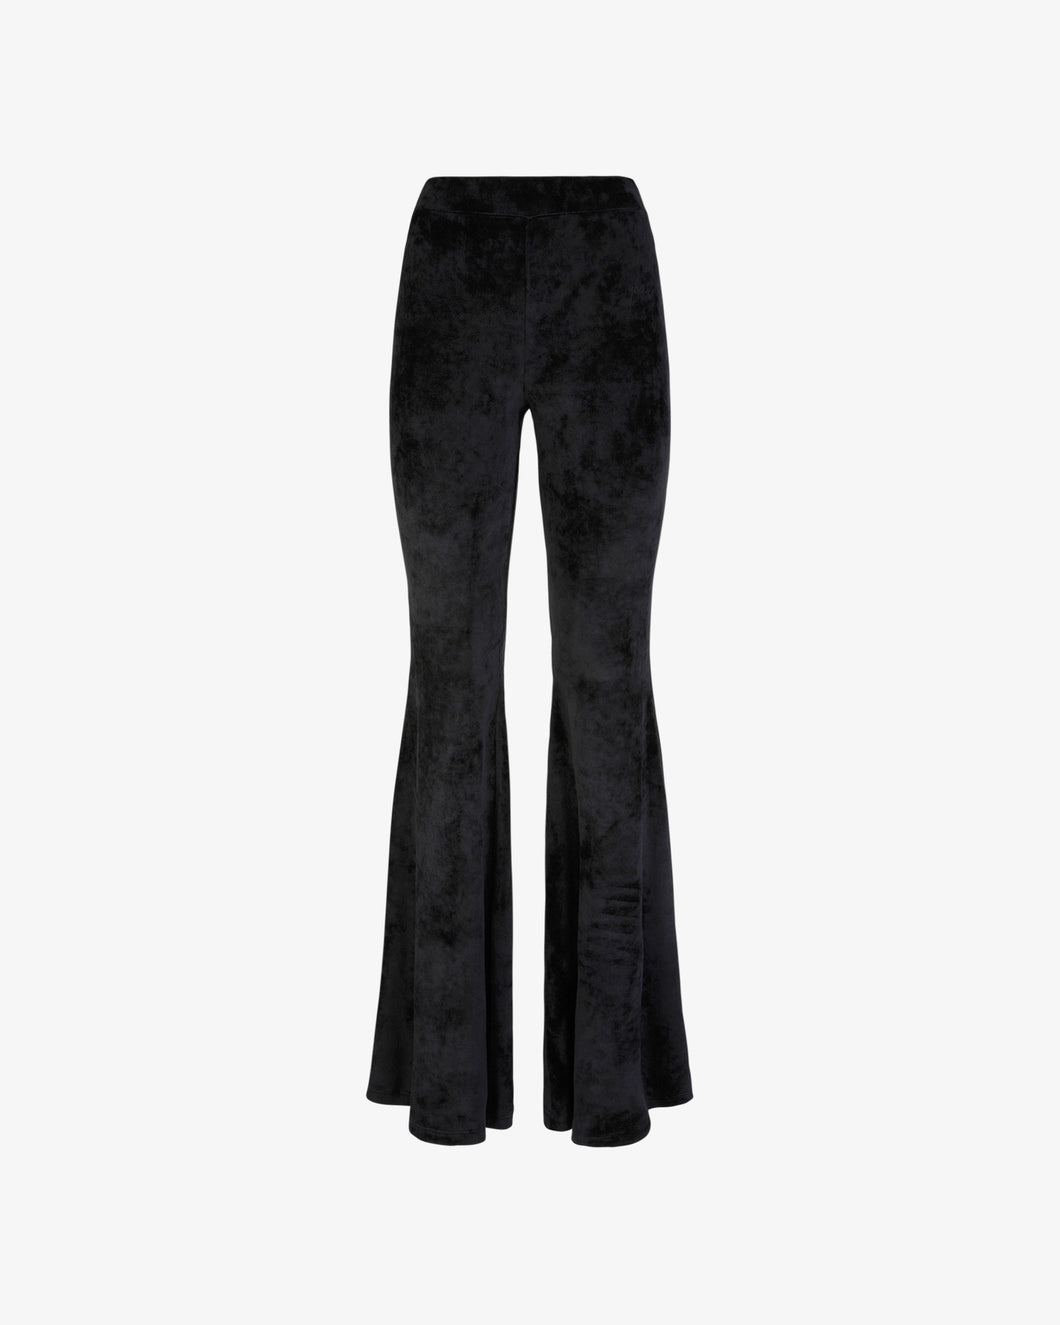 Velvet Trousers | Women Trousers Black | GCDS®